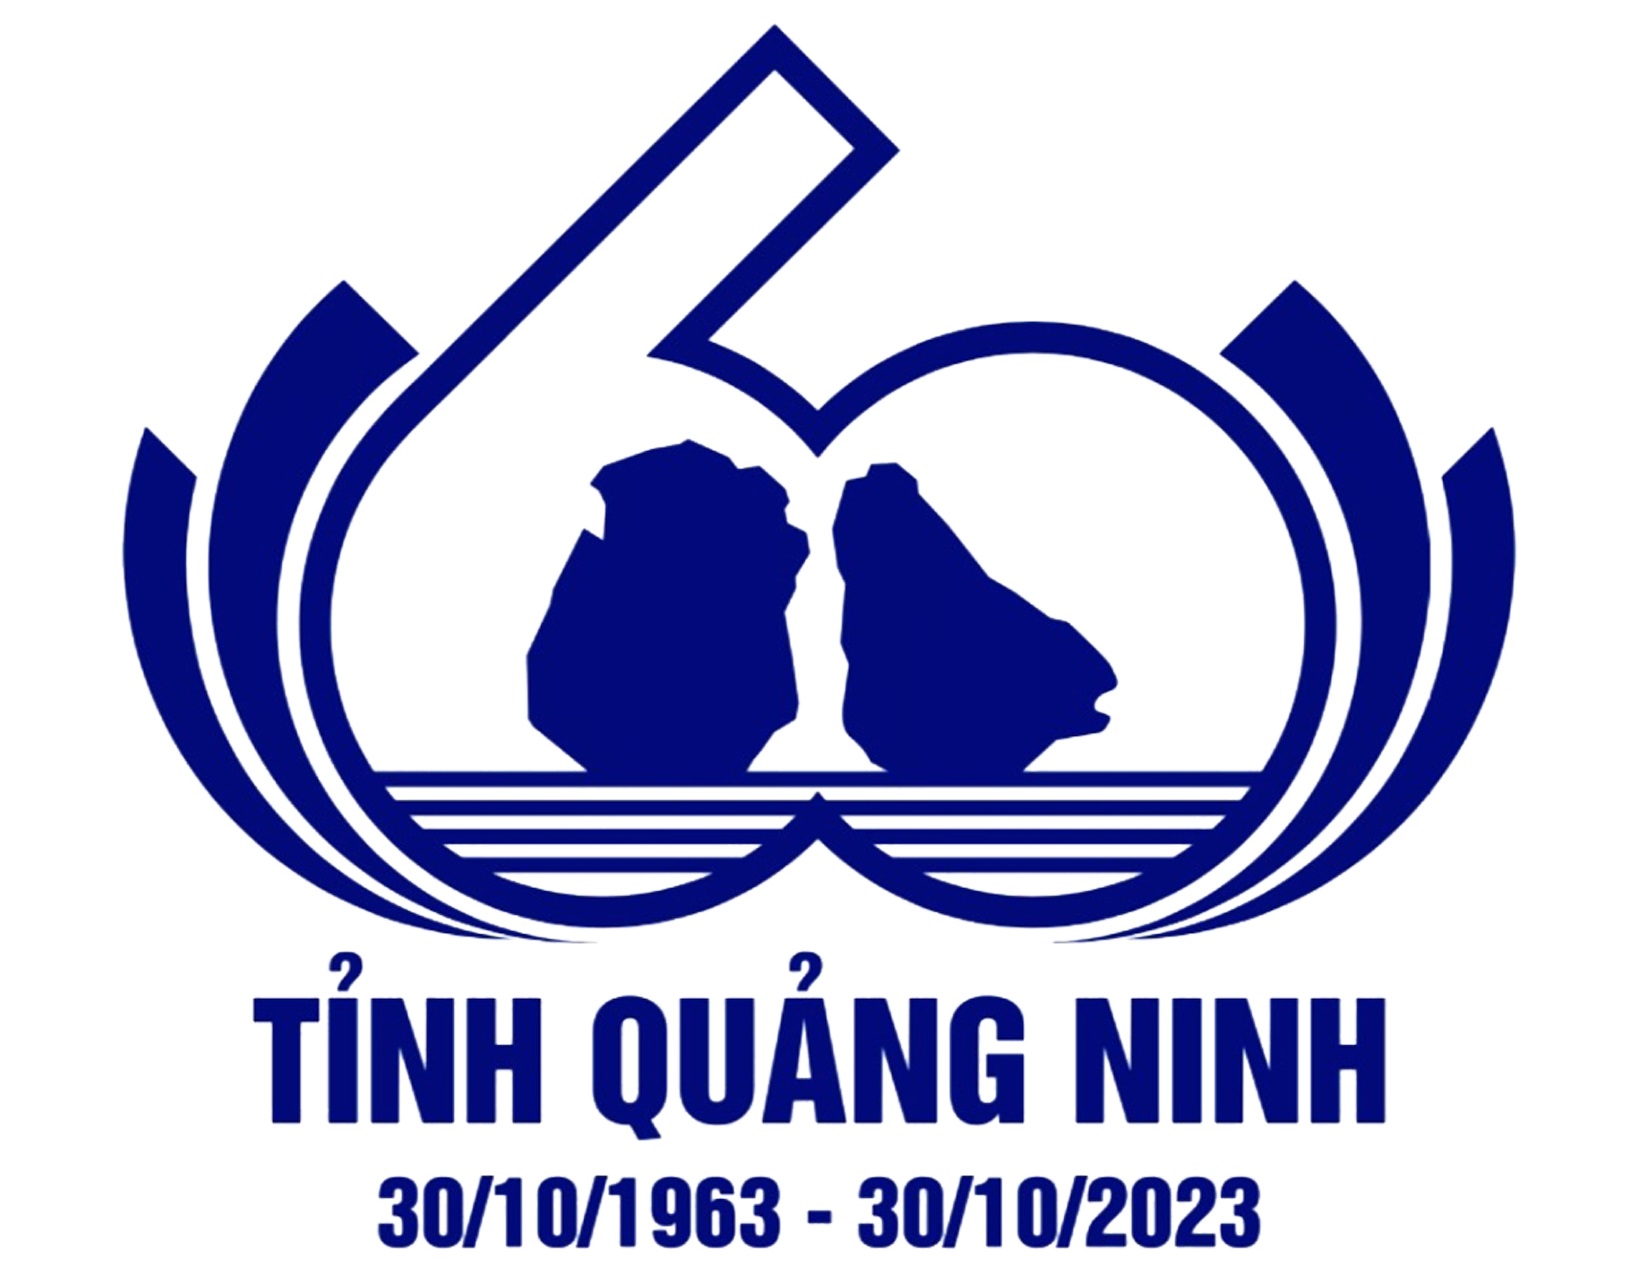 Chào mừng 60 năm ngày thành lập tỉnh Quảng Ninh (30/10/1963 - 30/10/2023)